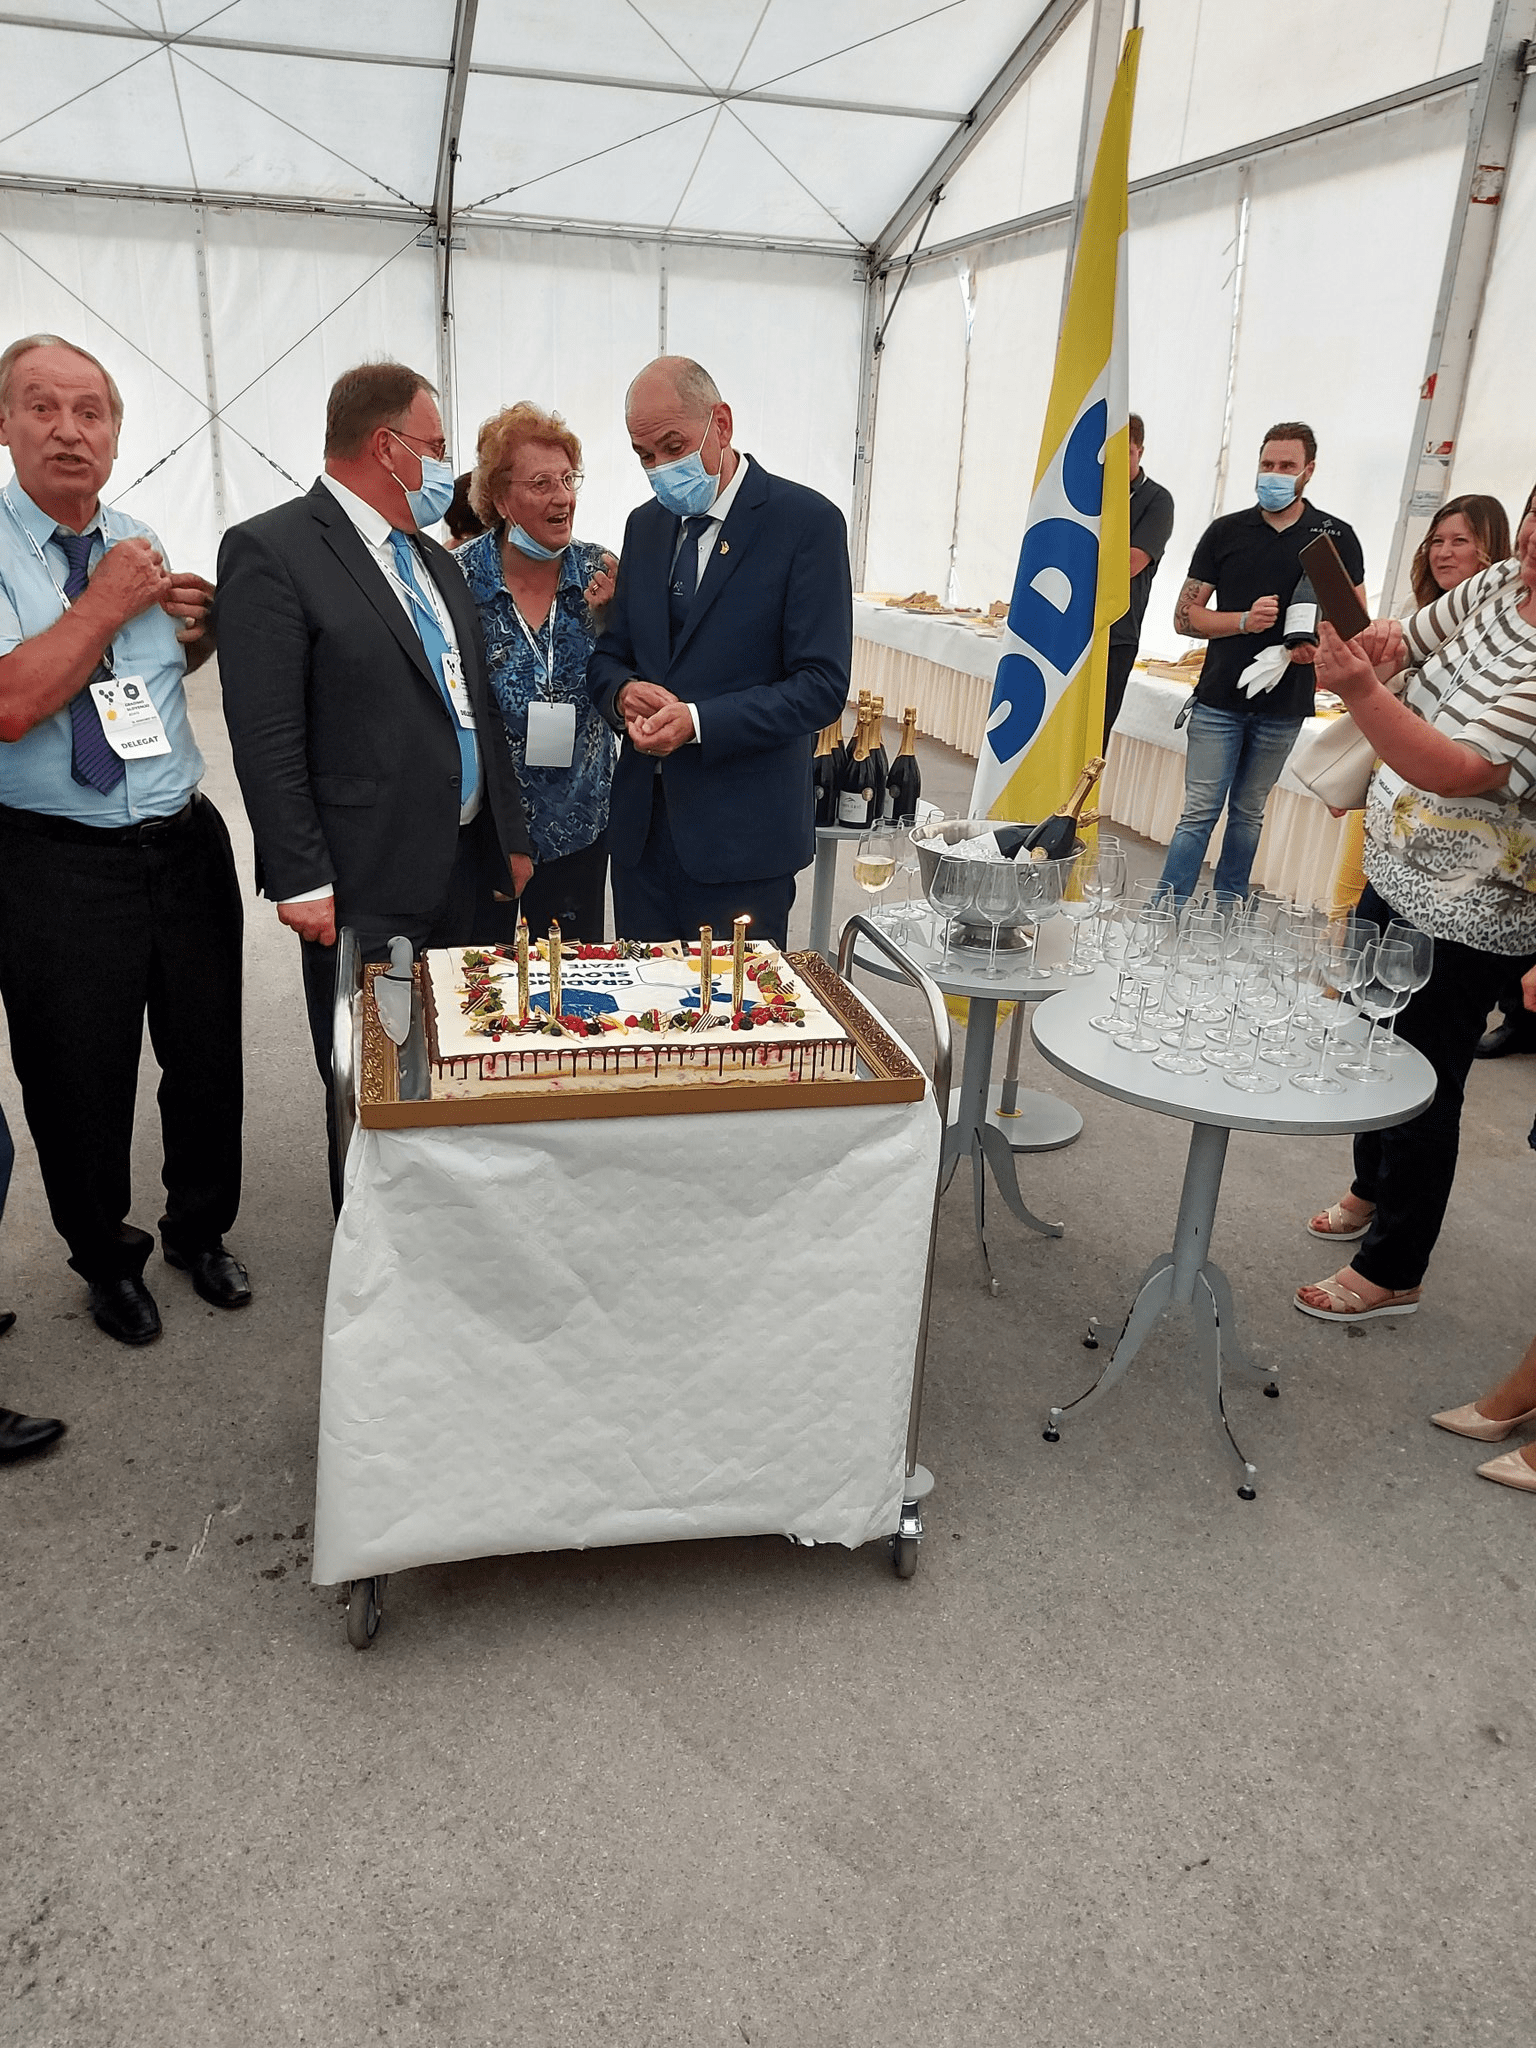 (VIDEO) Kongresna torta za vladajočo stranko SDS in njenega predsednika Janeza Janšo